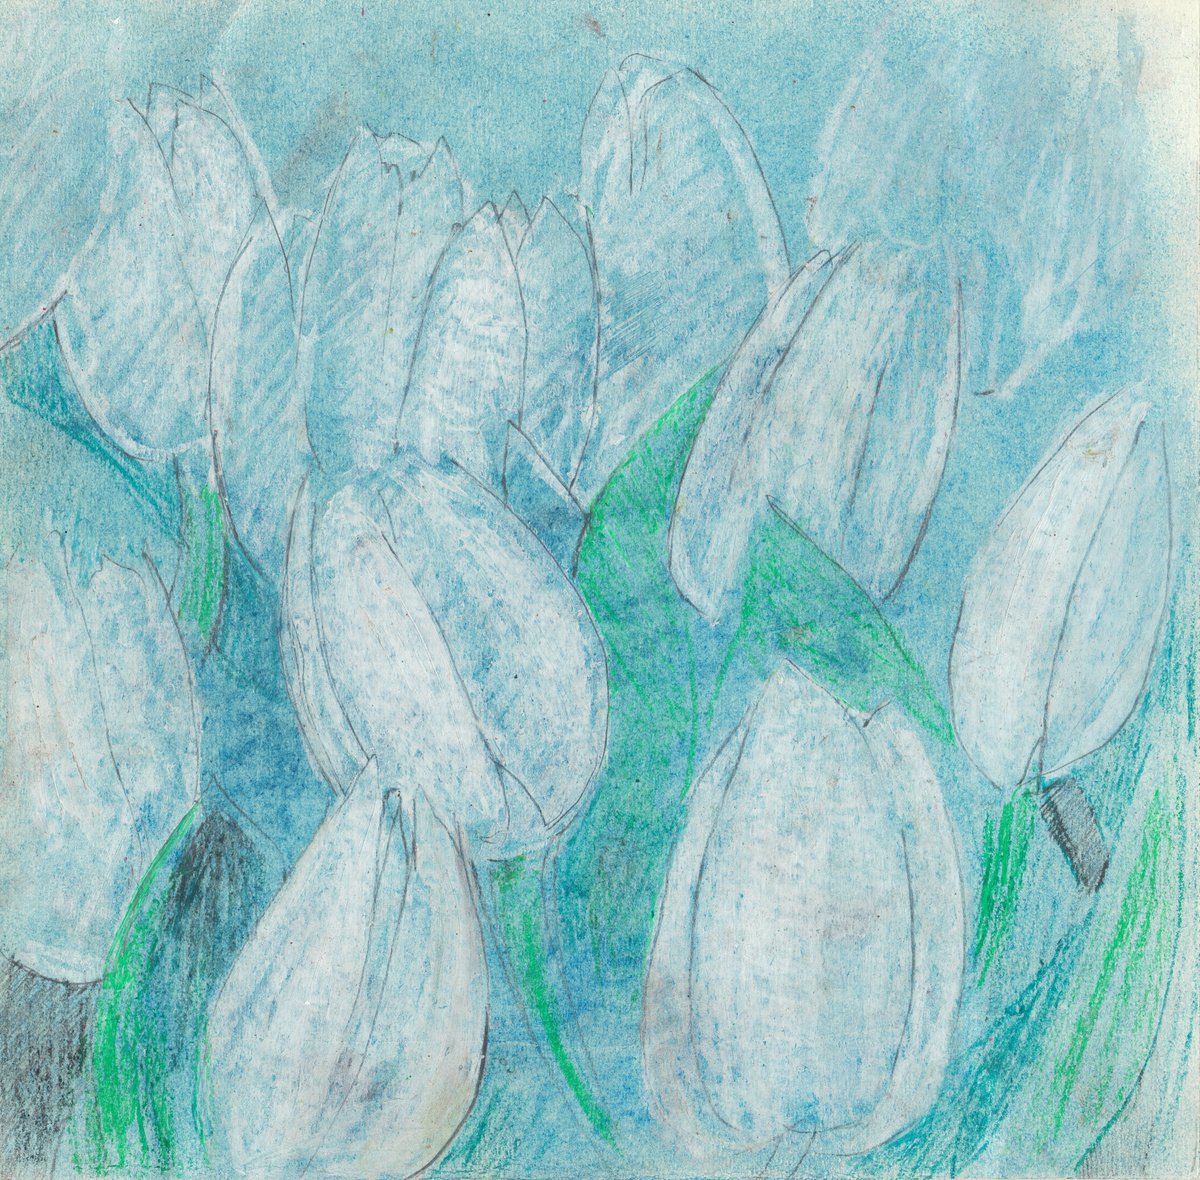 White tulips by Mia